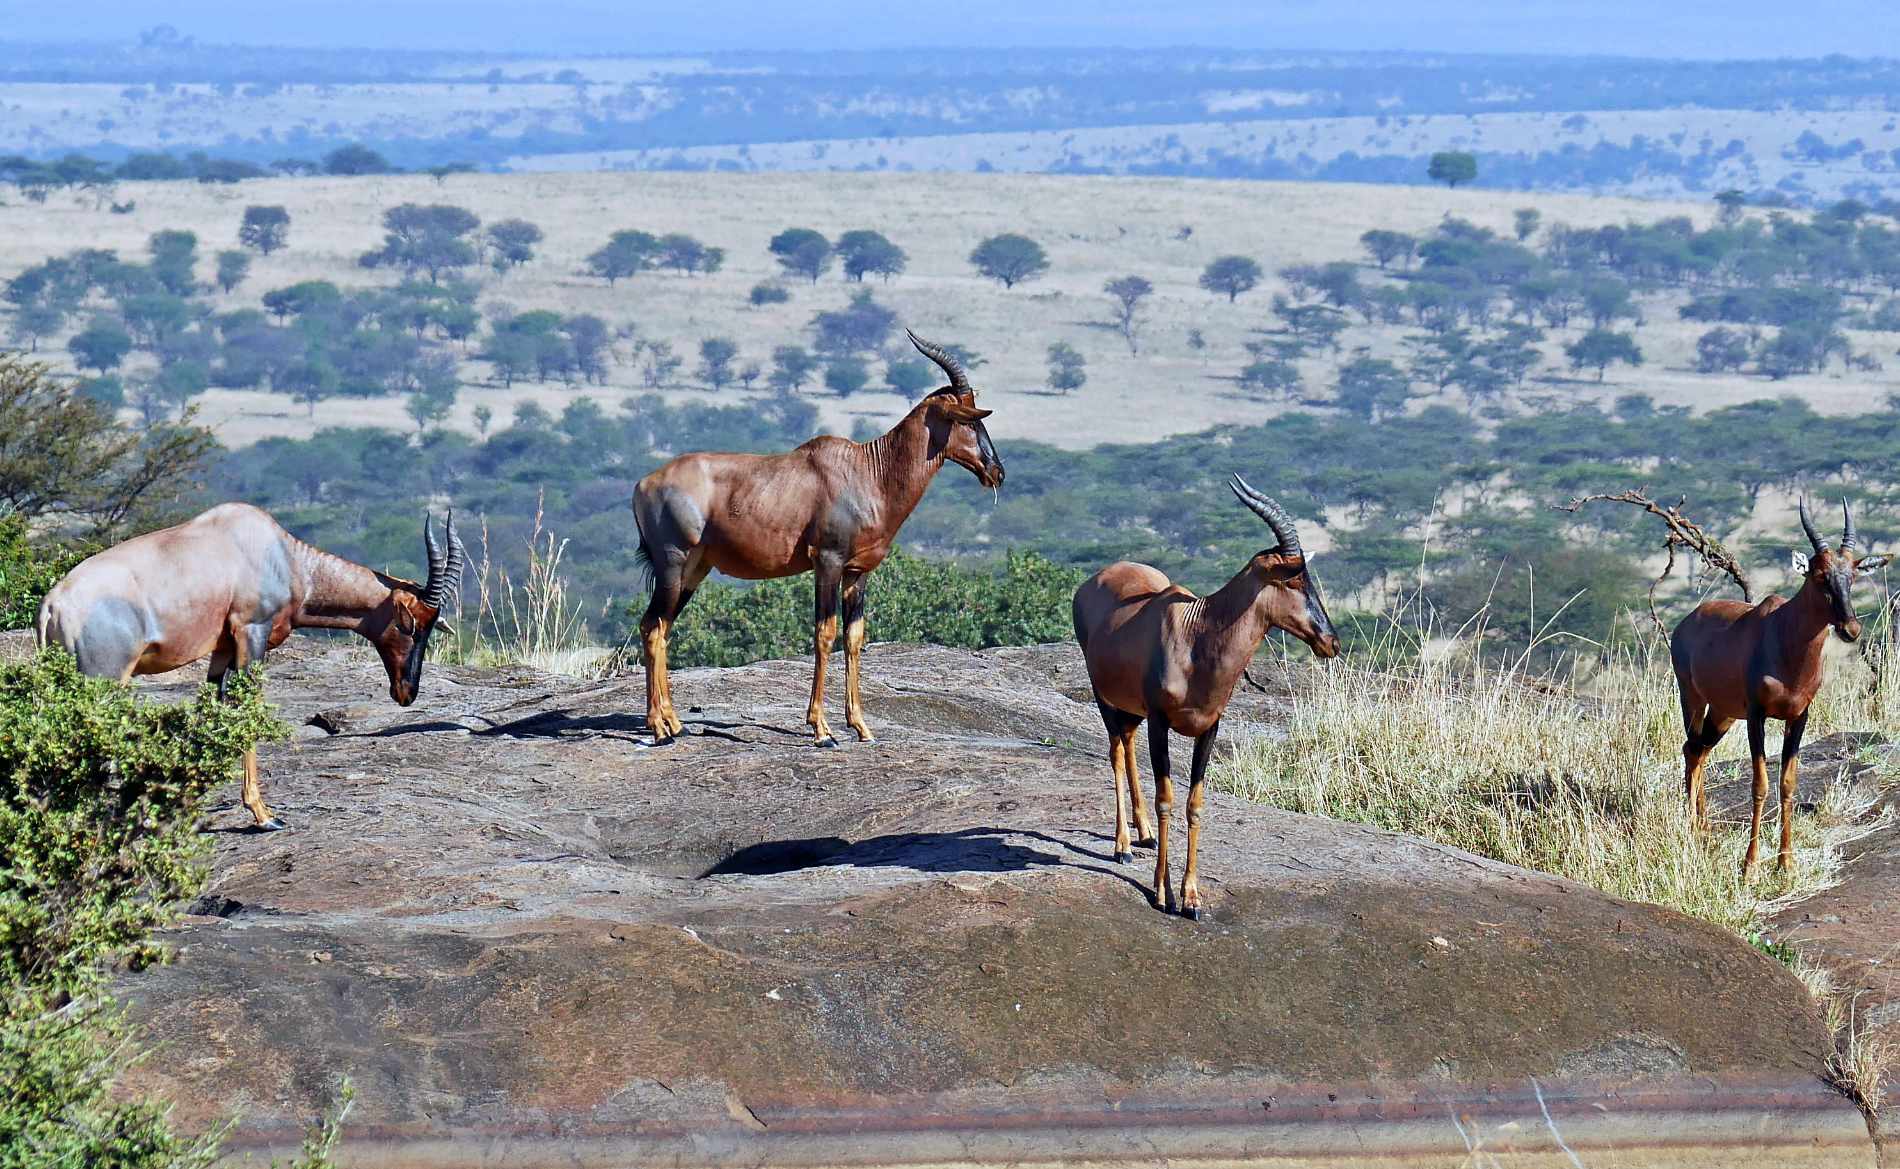 Leierantilopen stehen auf einem Fels, auch Kopje genannt, vor atemberaubender Kulisse im Serengeti Nationalpark